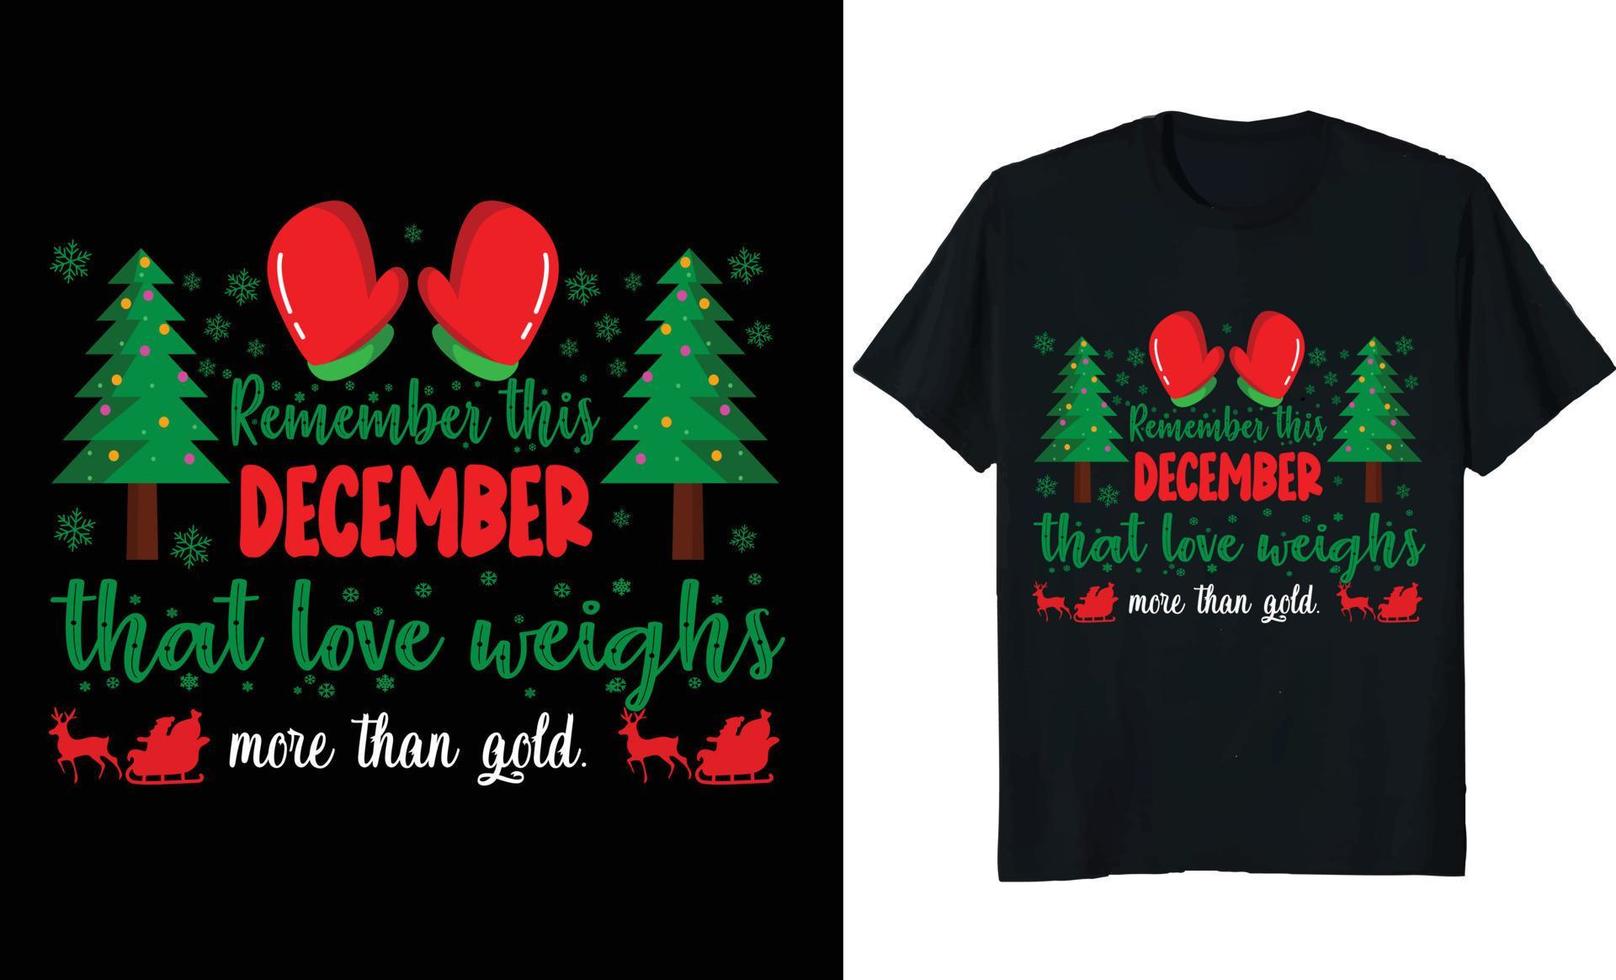 Weihnachtskalligraphie zitiert Mega-Sammlung. silhouetten-typografie-designs für weihnachtsdekoration, karten, t-shirts, becher, andere drucke mit wörtern und feiertagselementen. Aktienvektor-Schriftzugbündel vektor